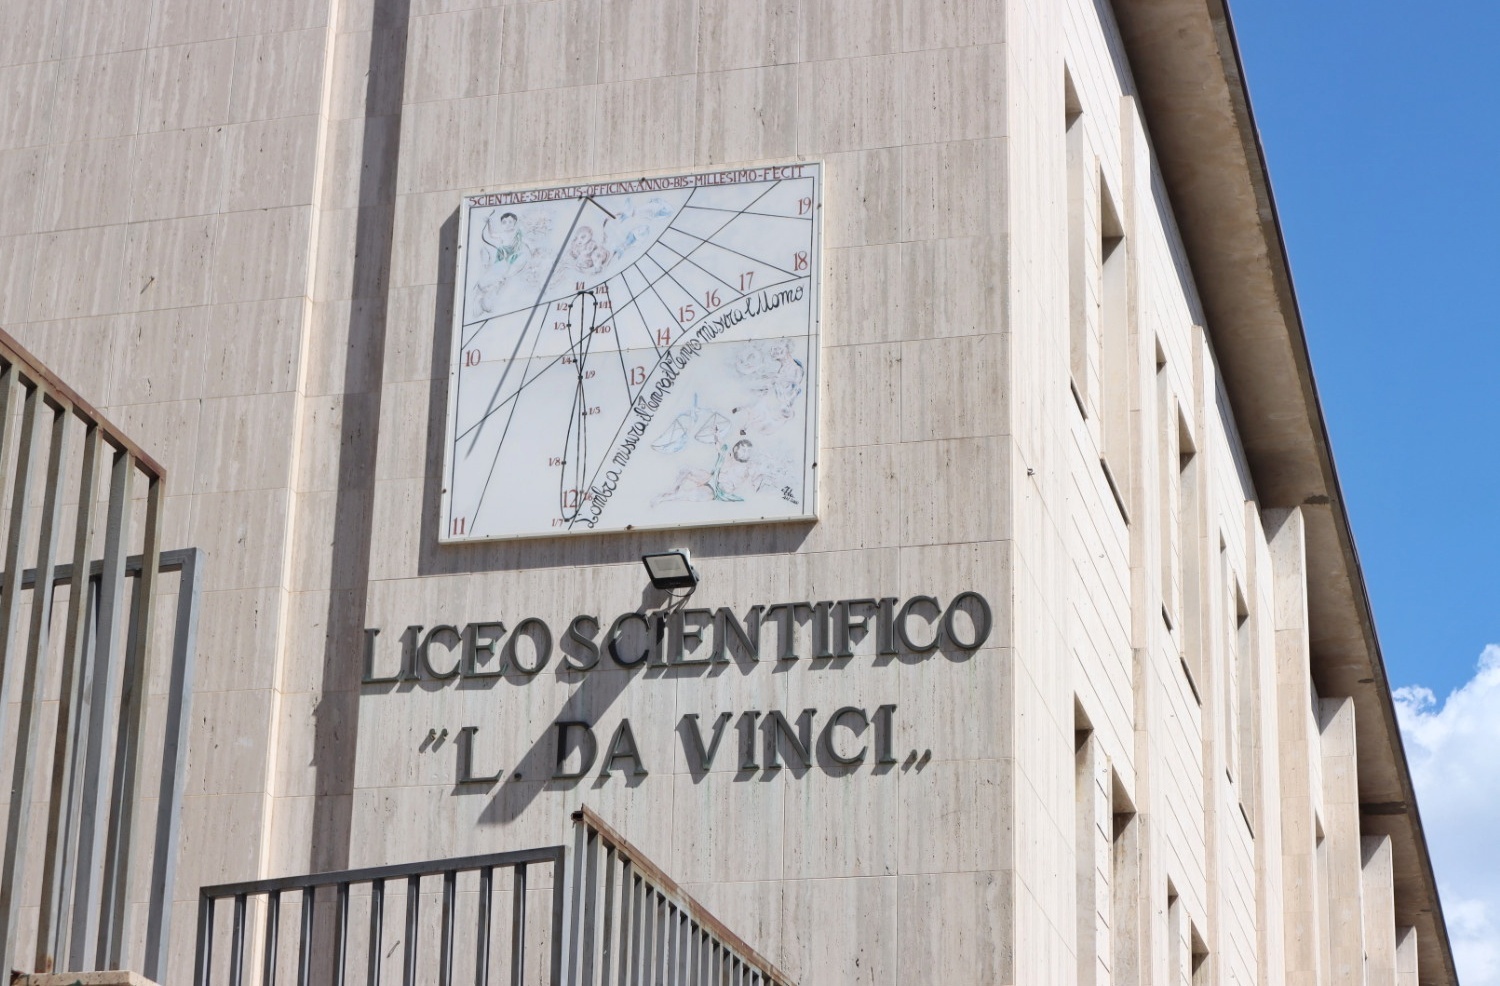 Reggio Calabria, al liceo scientifico "Leonardo da Vinci" il convegno "Prendersi Cura" StrettoWeb